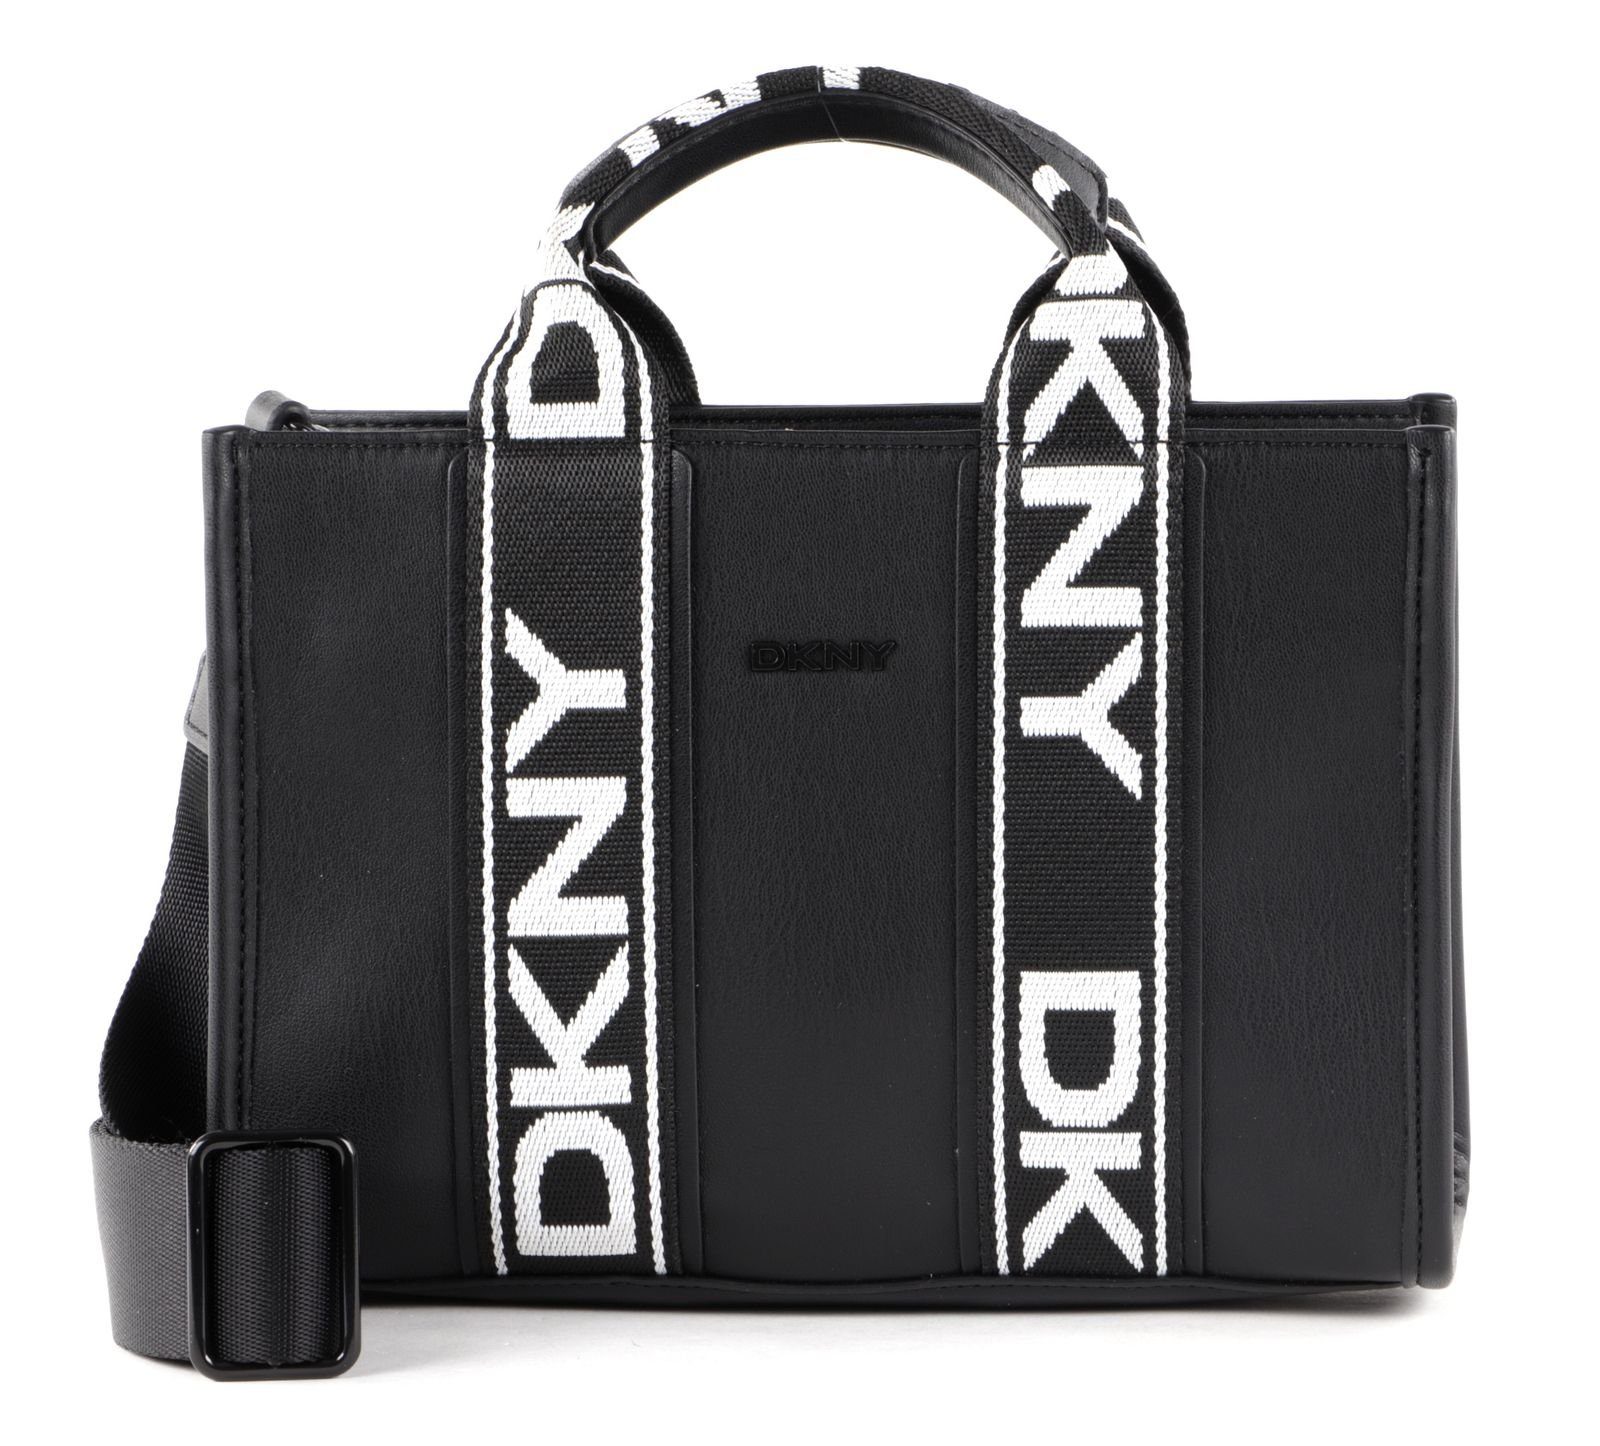 DKNY Handtasche online kaufen | OTTO